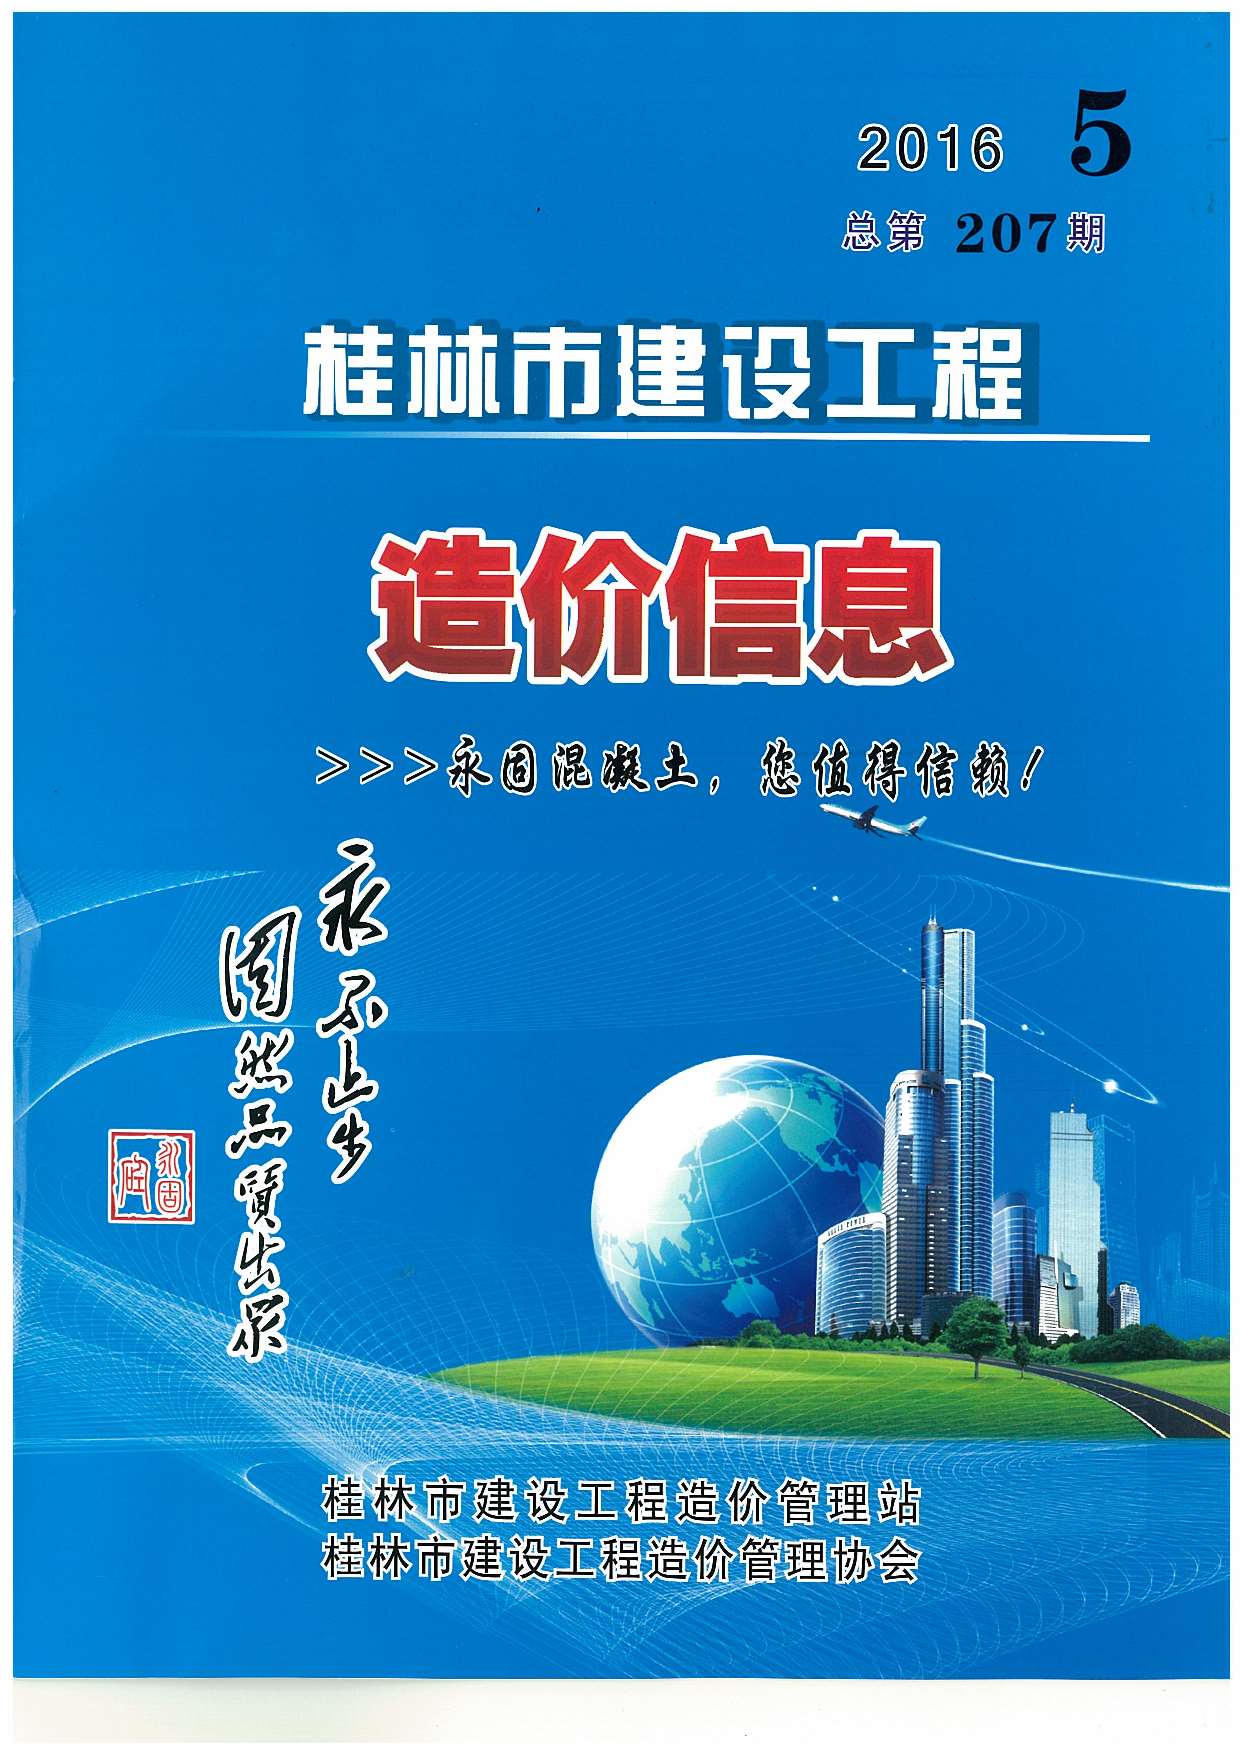 桂林市2016年5月建设工程造价信息